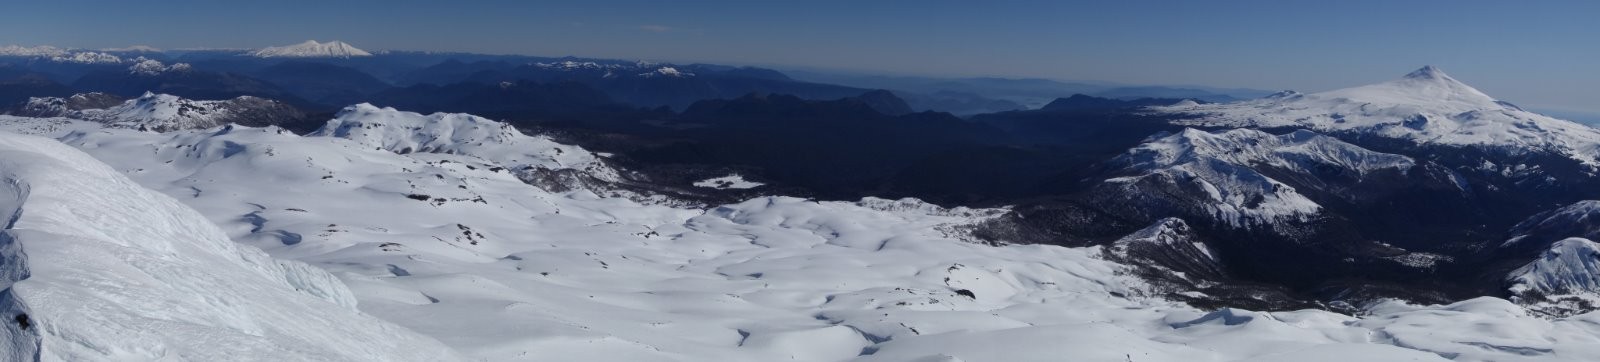 Panorama sur les volcans Mocho, Choshuenco et Villarica